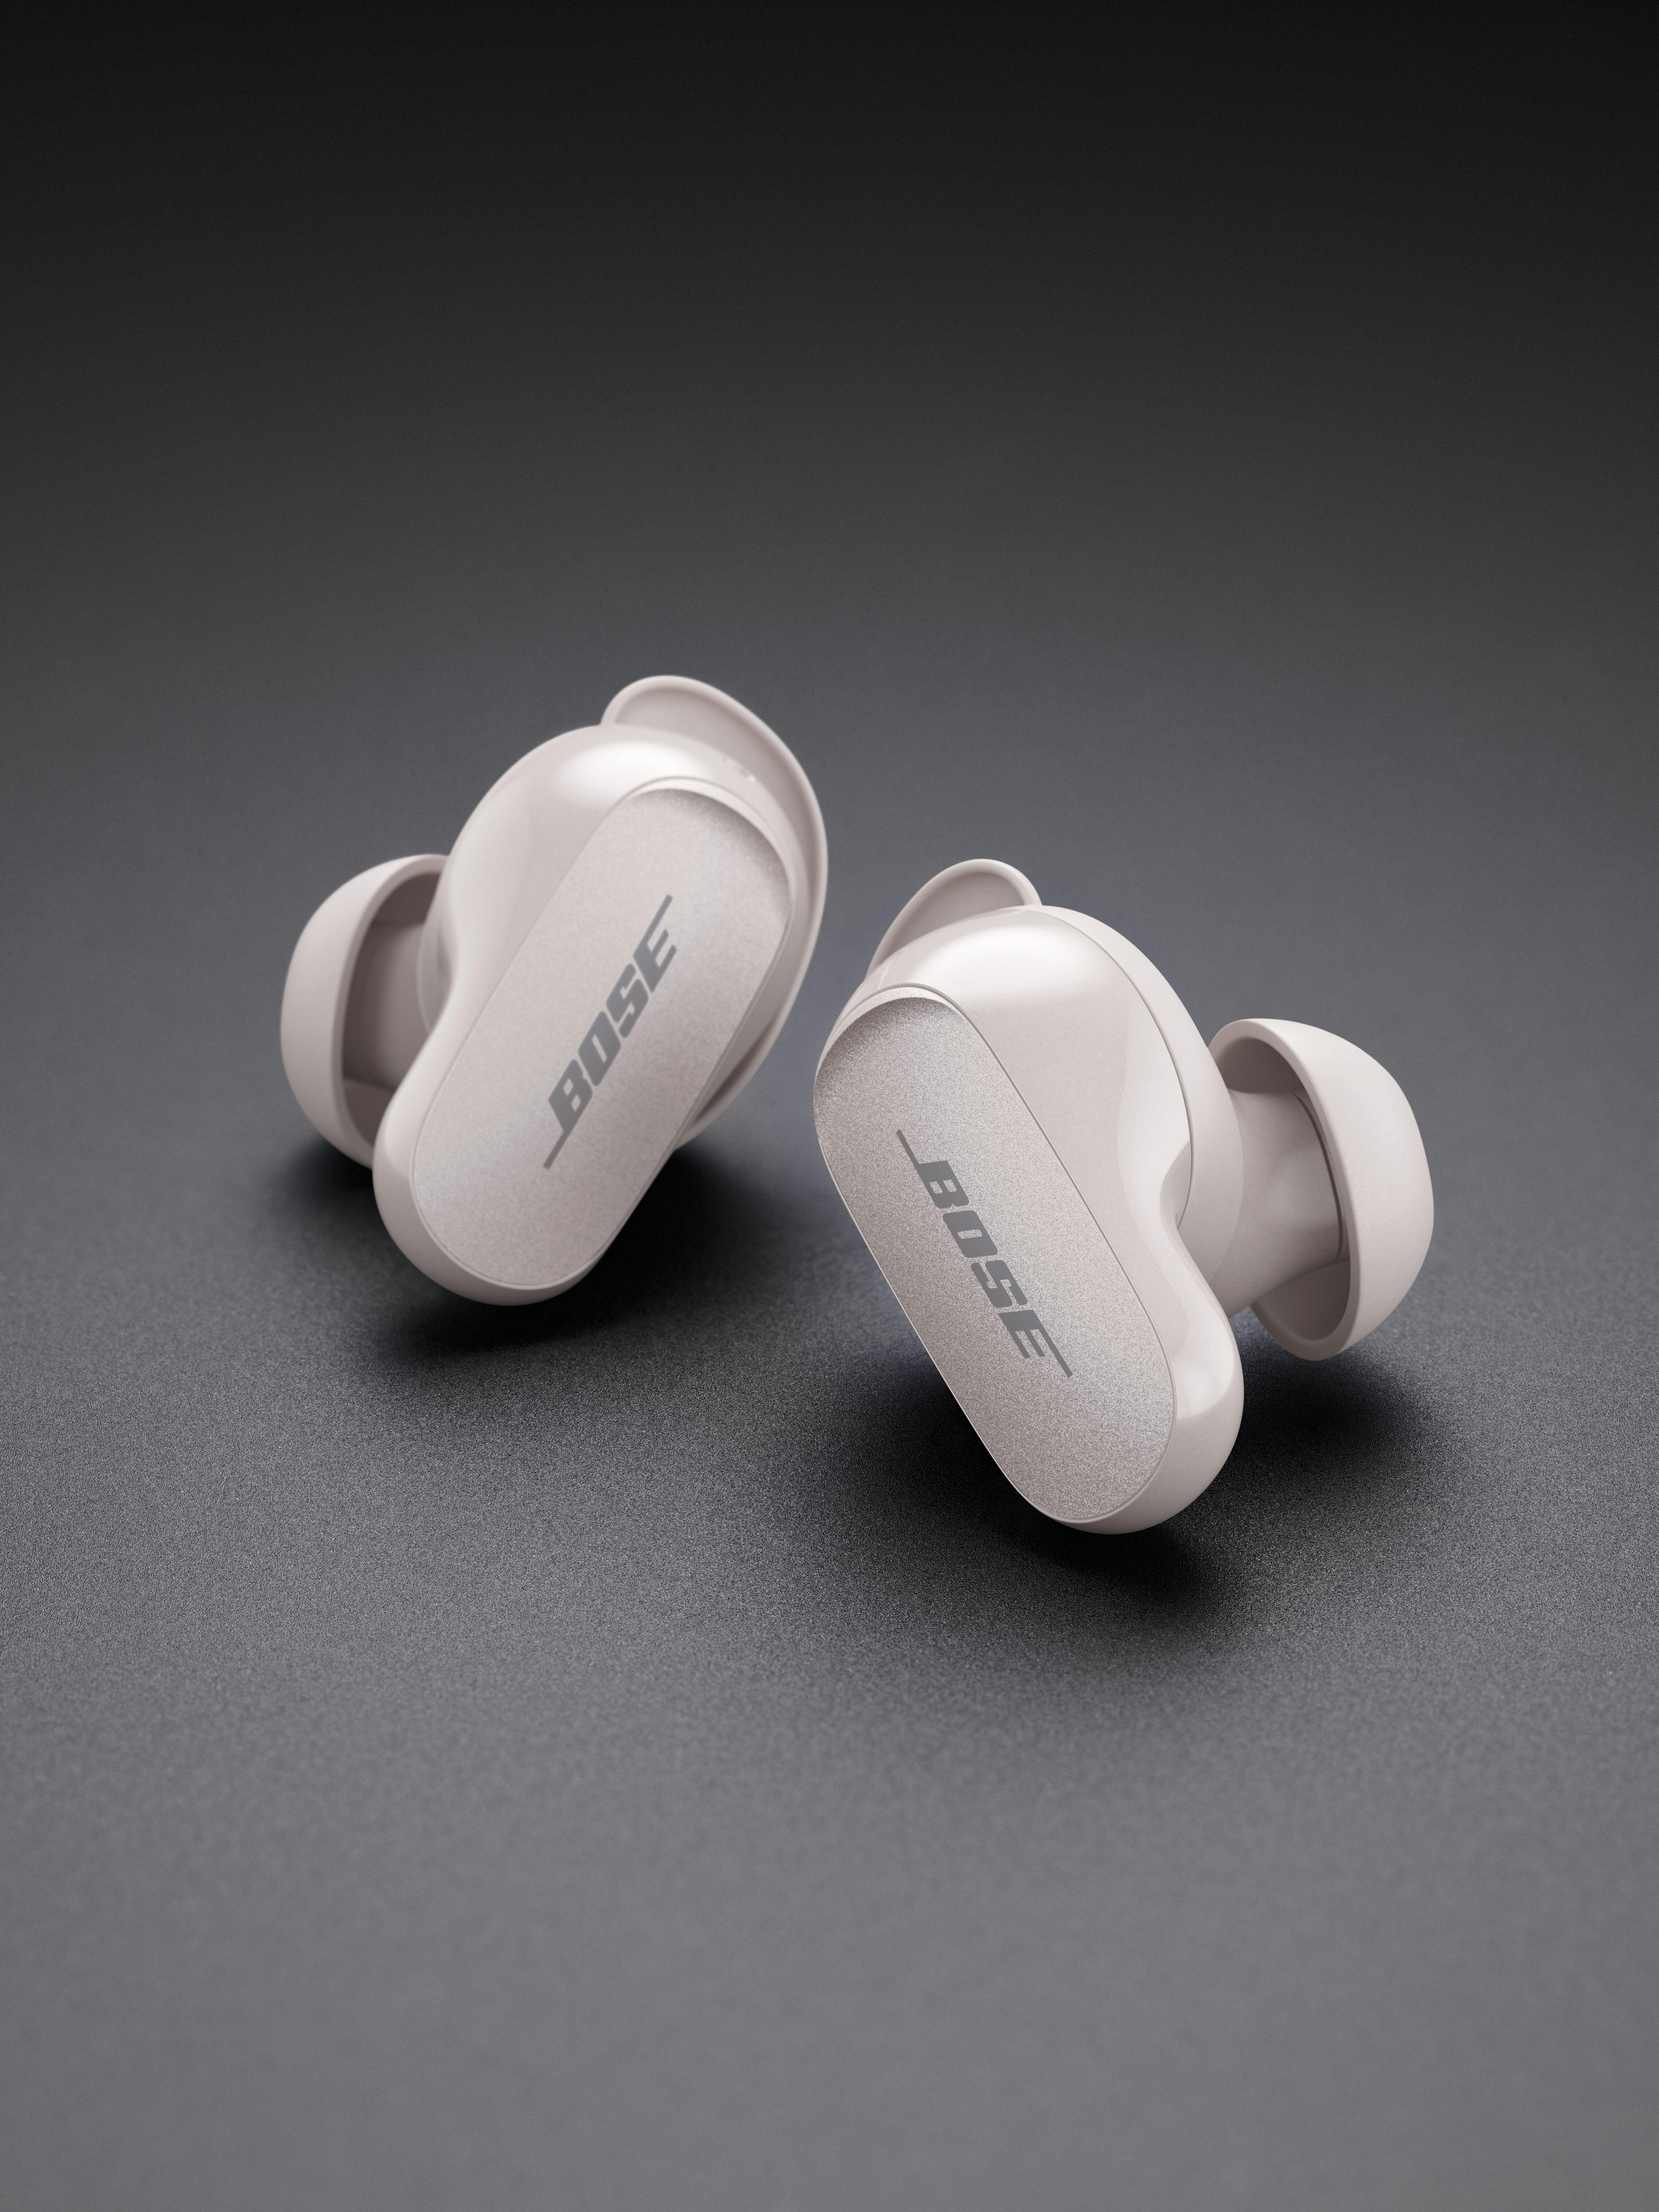 Soapstone Kopfhörer In-ear QuietComfort Wireless, Bluetooth Earbuds True BOSE II